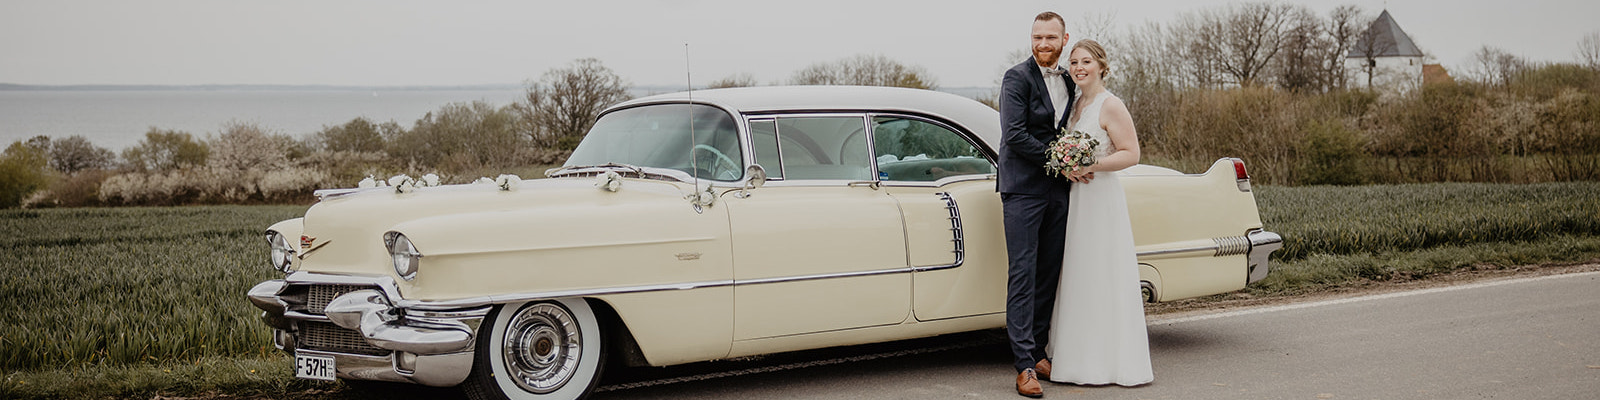 1956er Cadillac Deville mit Brautpaar